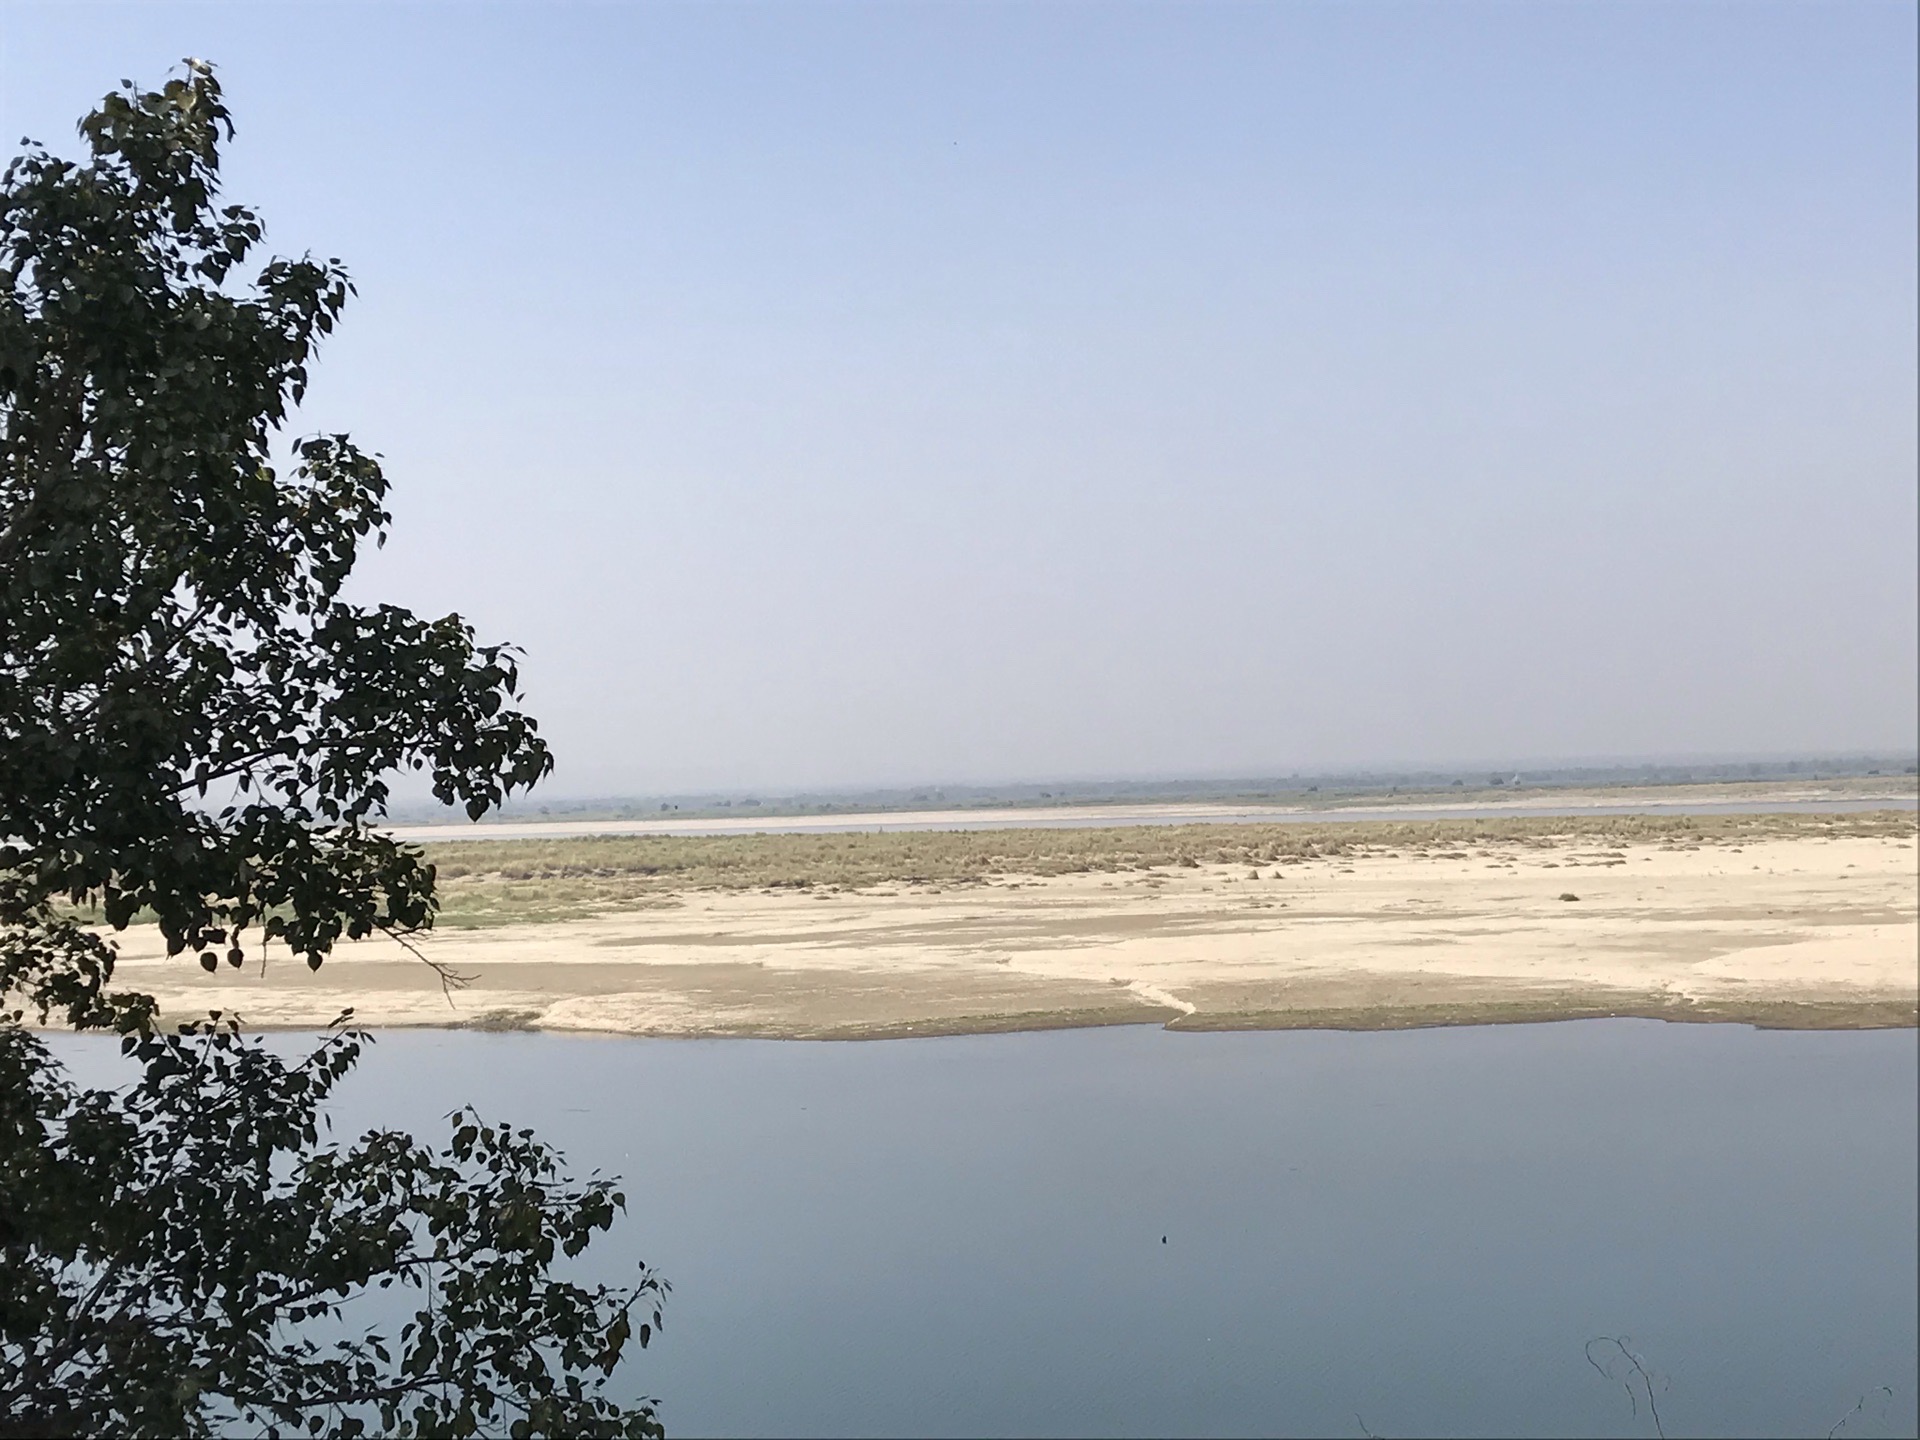 伊洛瓦底江 这个是缅甸的第一河流，和我们中国的黄河流域长江一样，它穿越整个缅甸，一直到仰光然后流入大